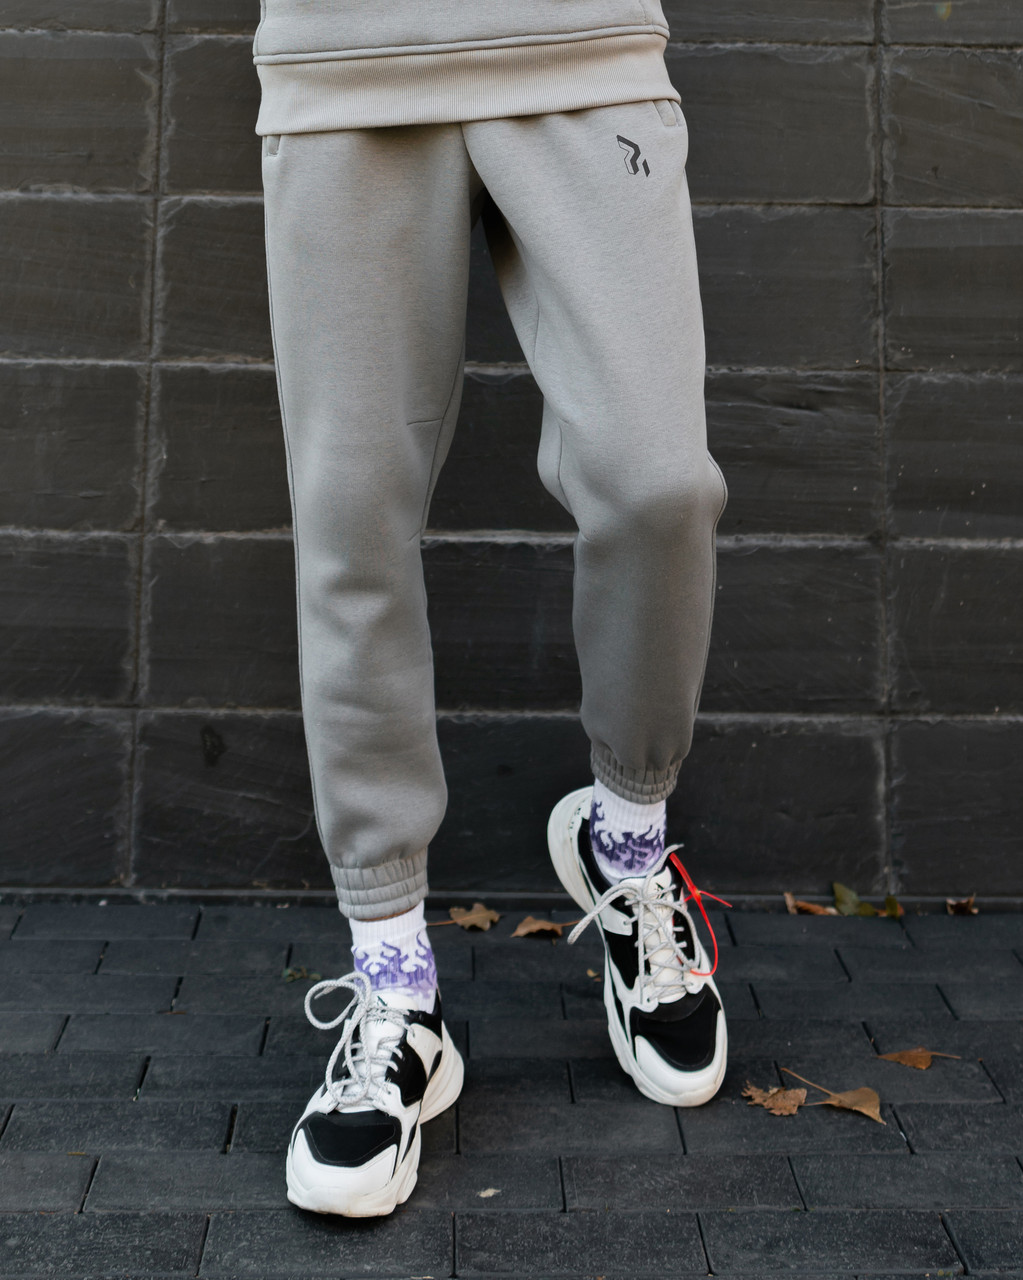 Теплые спортивные штаны Jog 2.0 серые Пушка Огонь - Фото 4